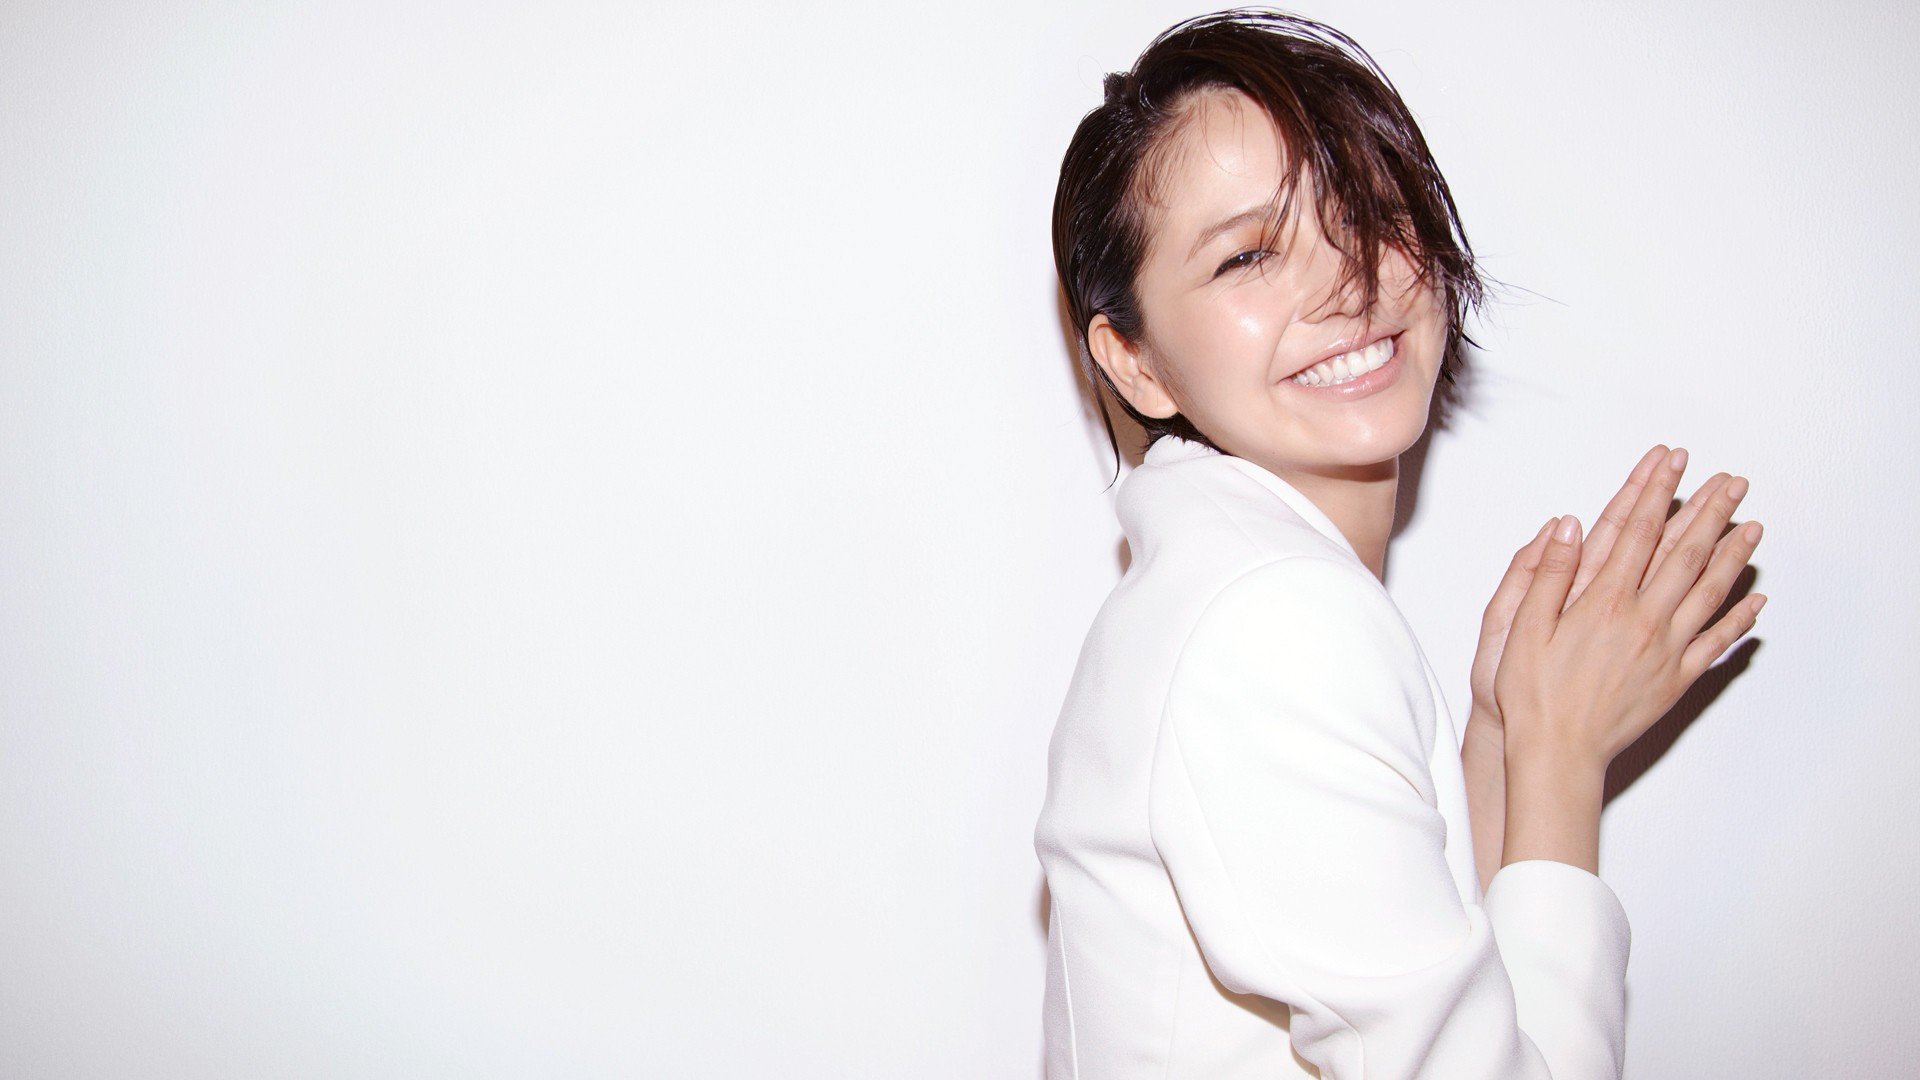 Masami Nagasawa, Smiling, Simple background, Hair in face, Asian, Women, White tops Wallpaper